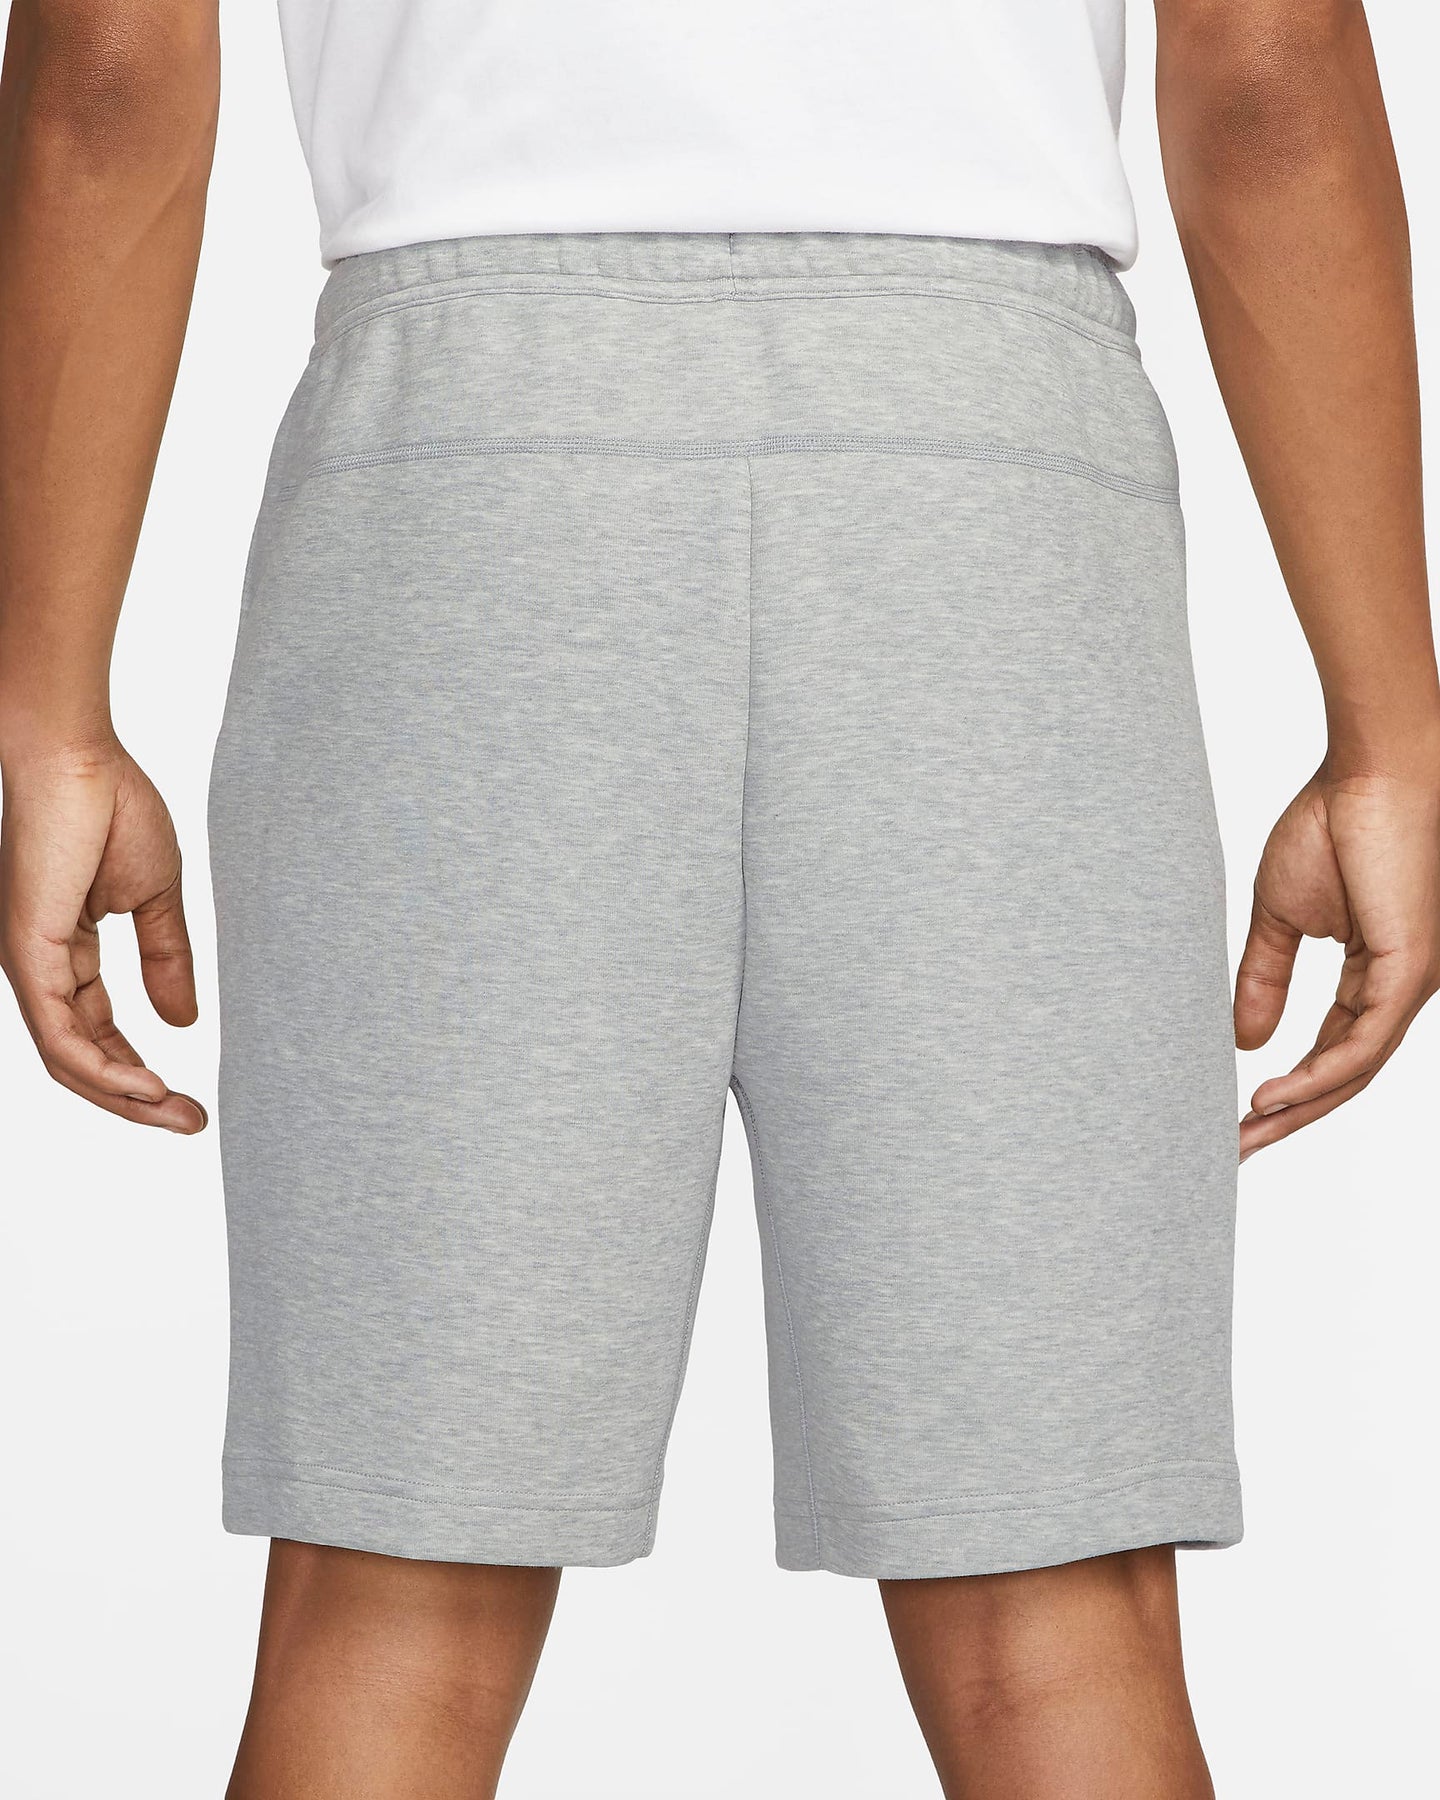 Nike Sportswear Tech Fleece Shorts – PRIVATE SNEAKERS